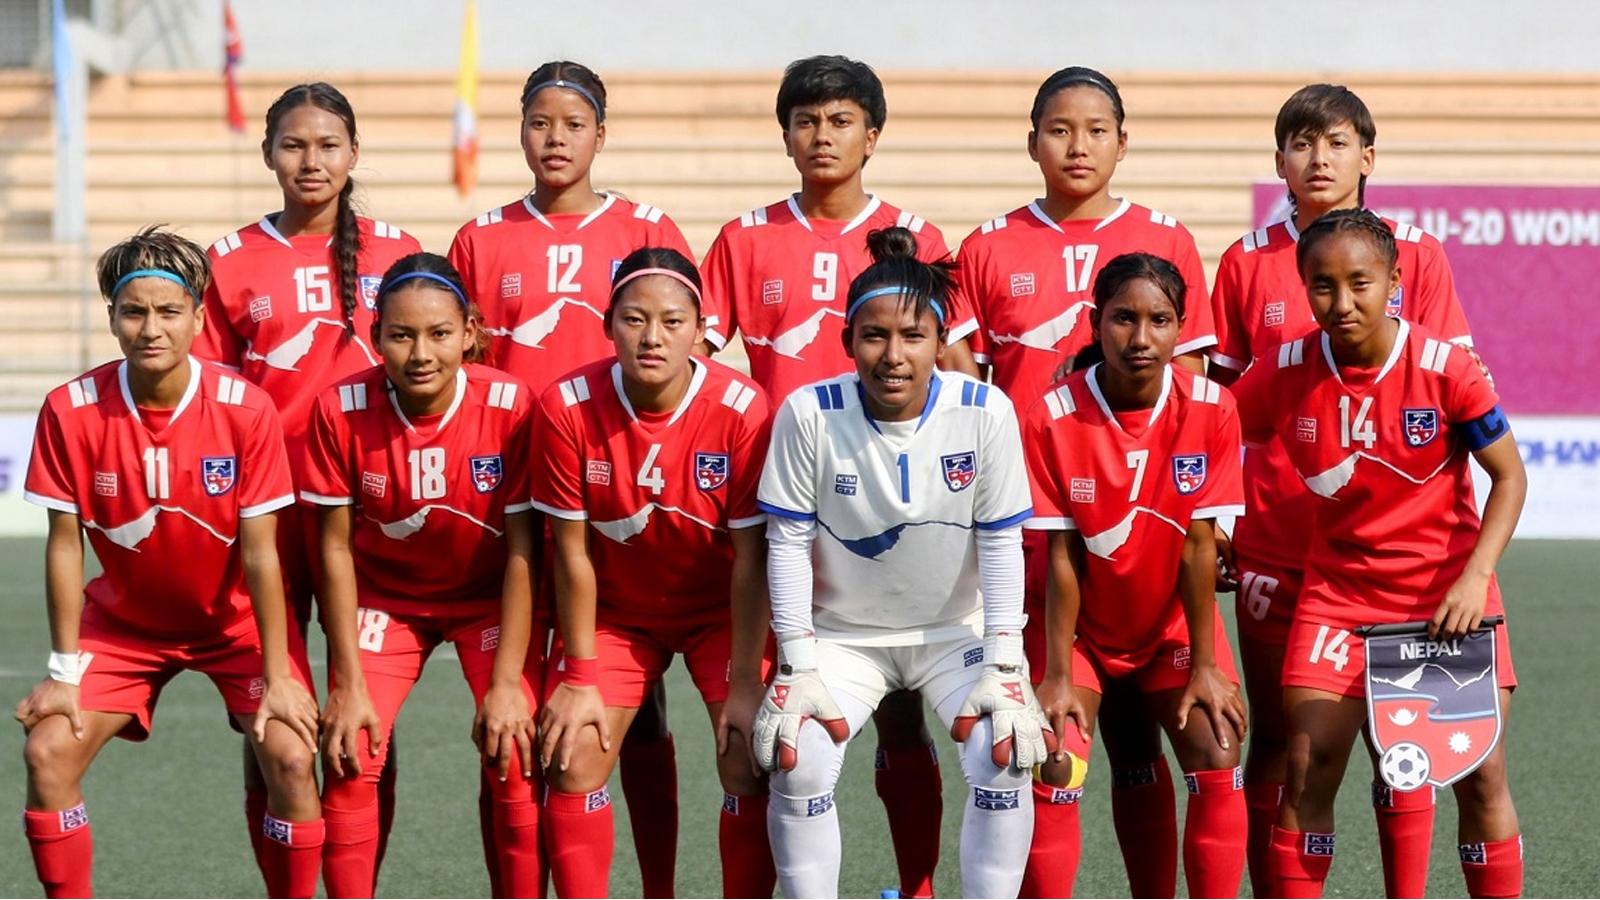 भारतलाई हराउँदै साफ महिला च्याम्पियनसिपको फाइनलमा नेपाल